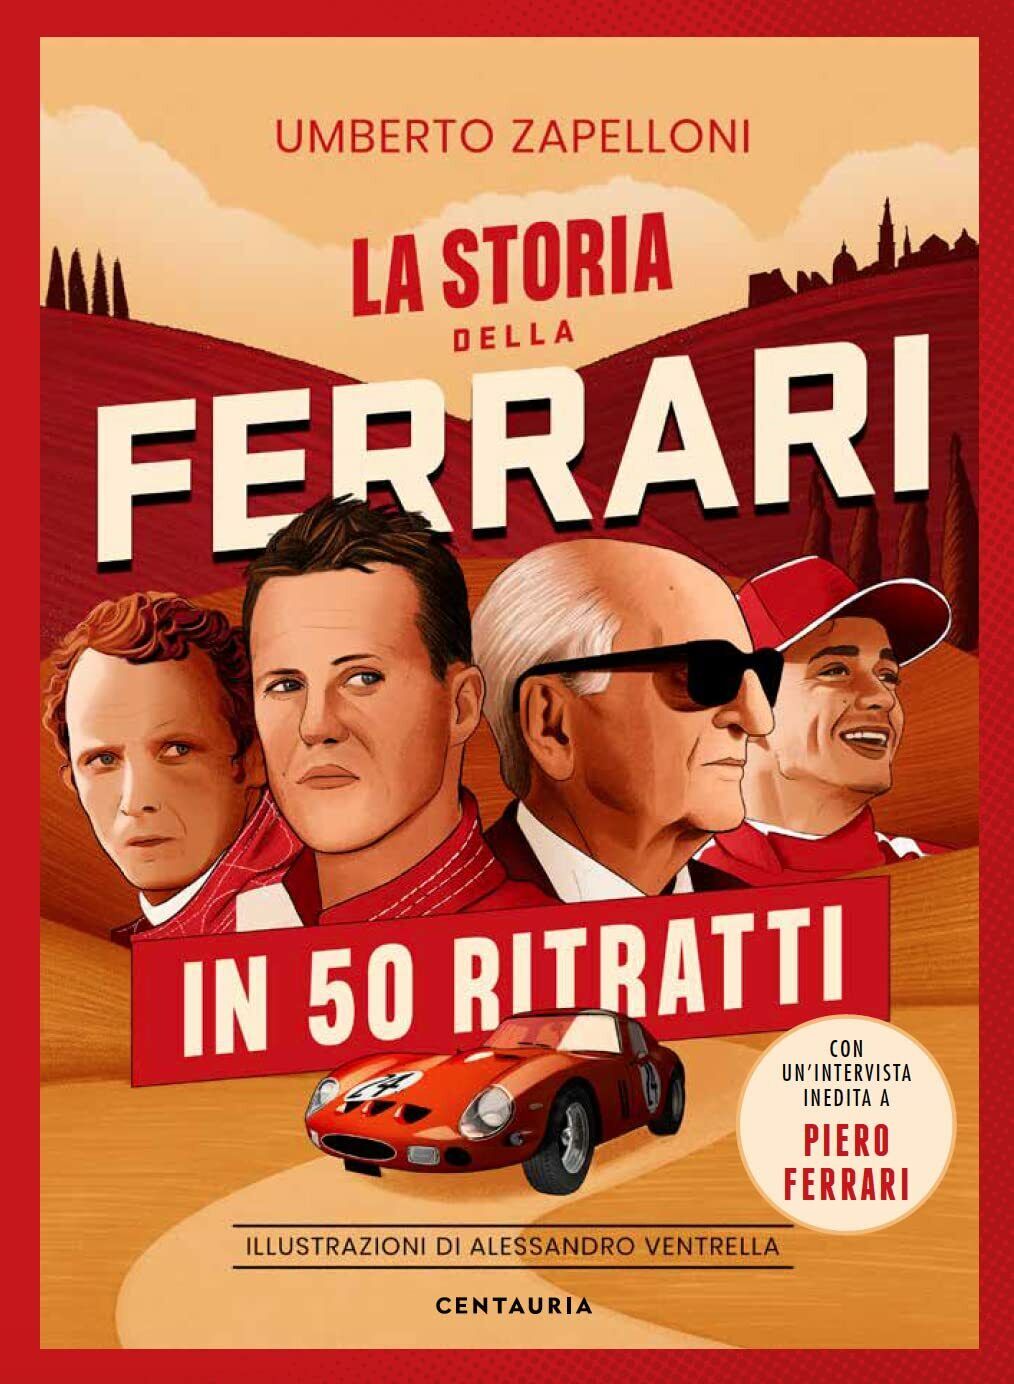 La storia della Ferrari in 50 ritratti - Umberto Zapelloni - Centauria, 2022